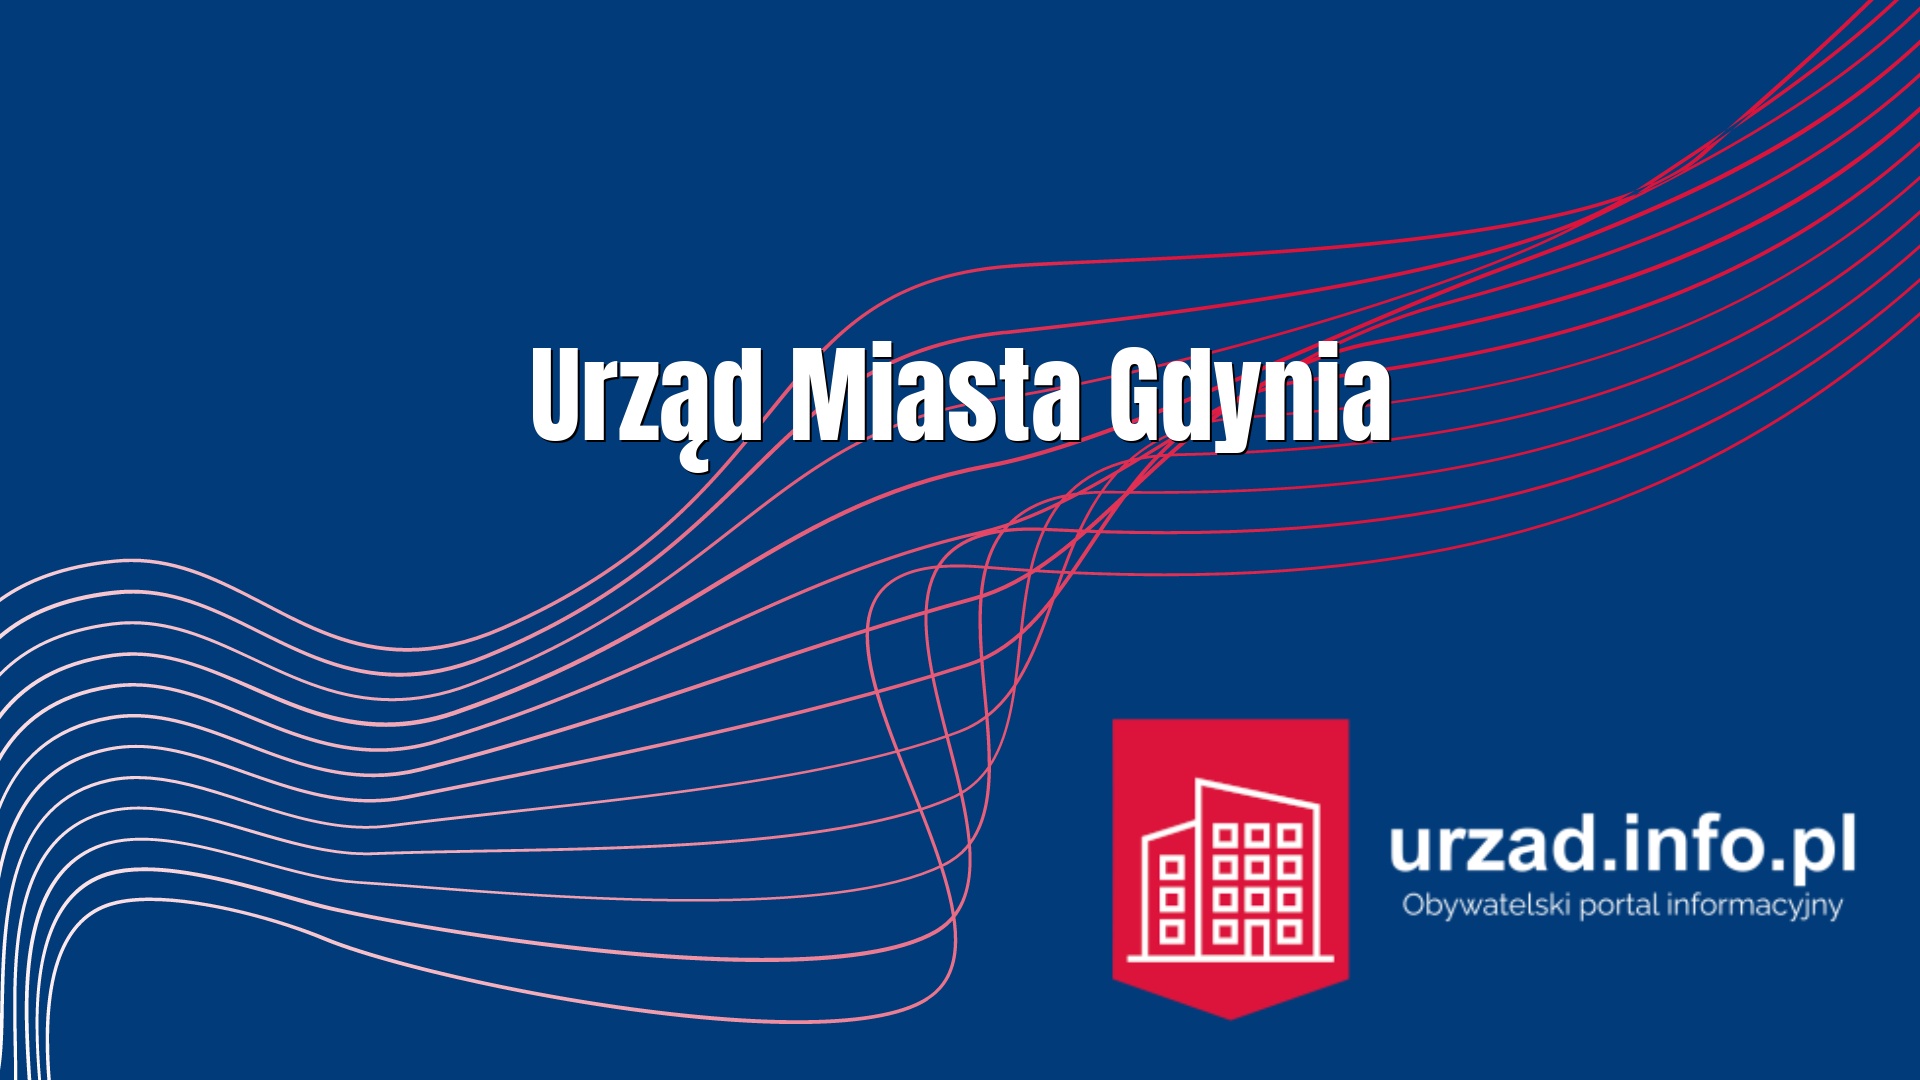 Urząd Miasta Gdynia